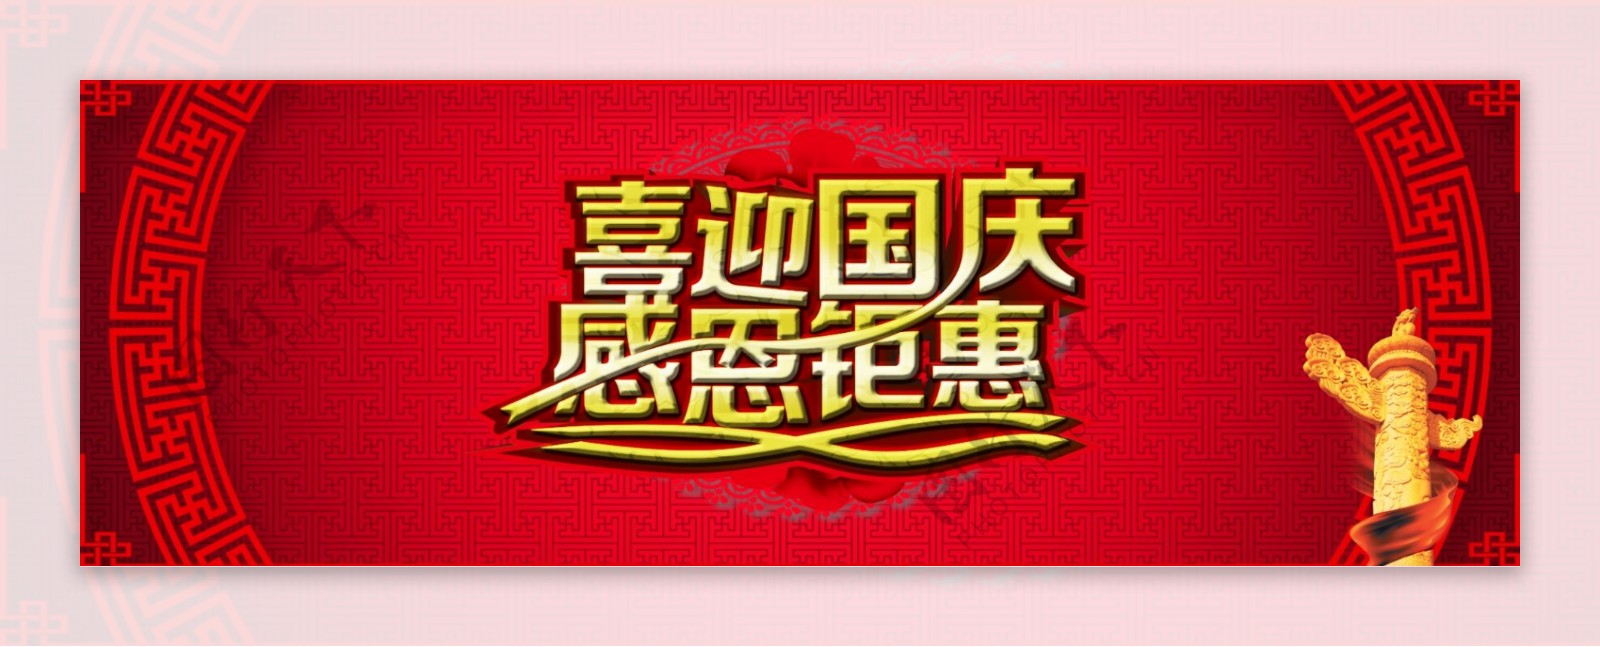 红色简约中国风喜迎国庆感恩钜惠促销海报淘宝电商